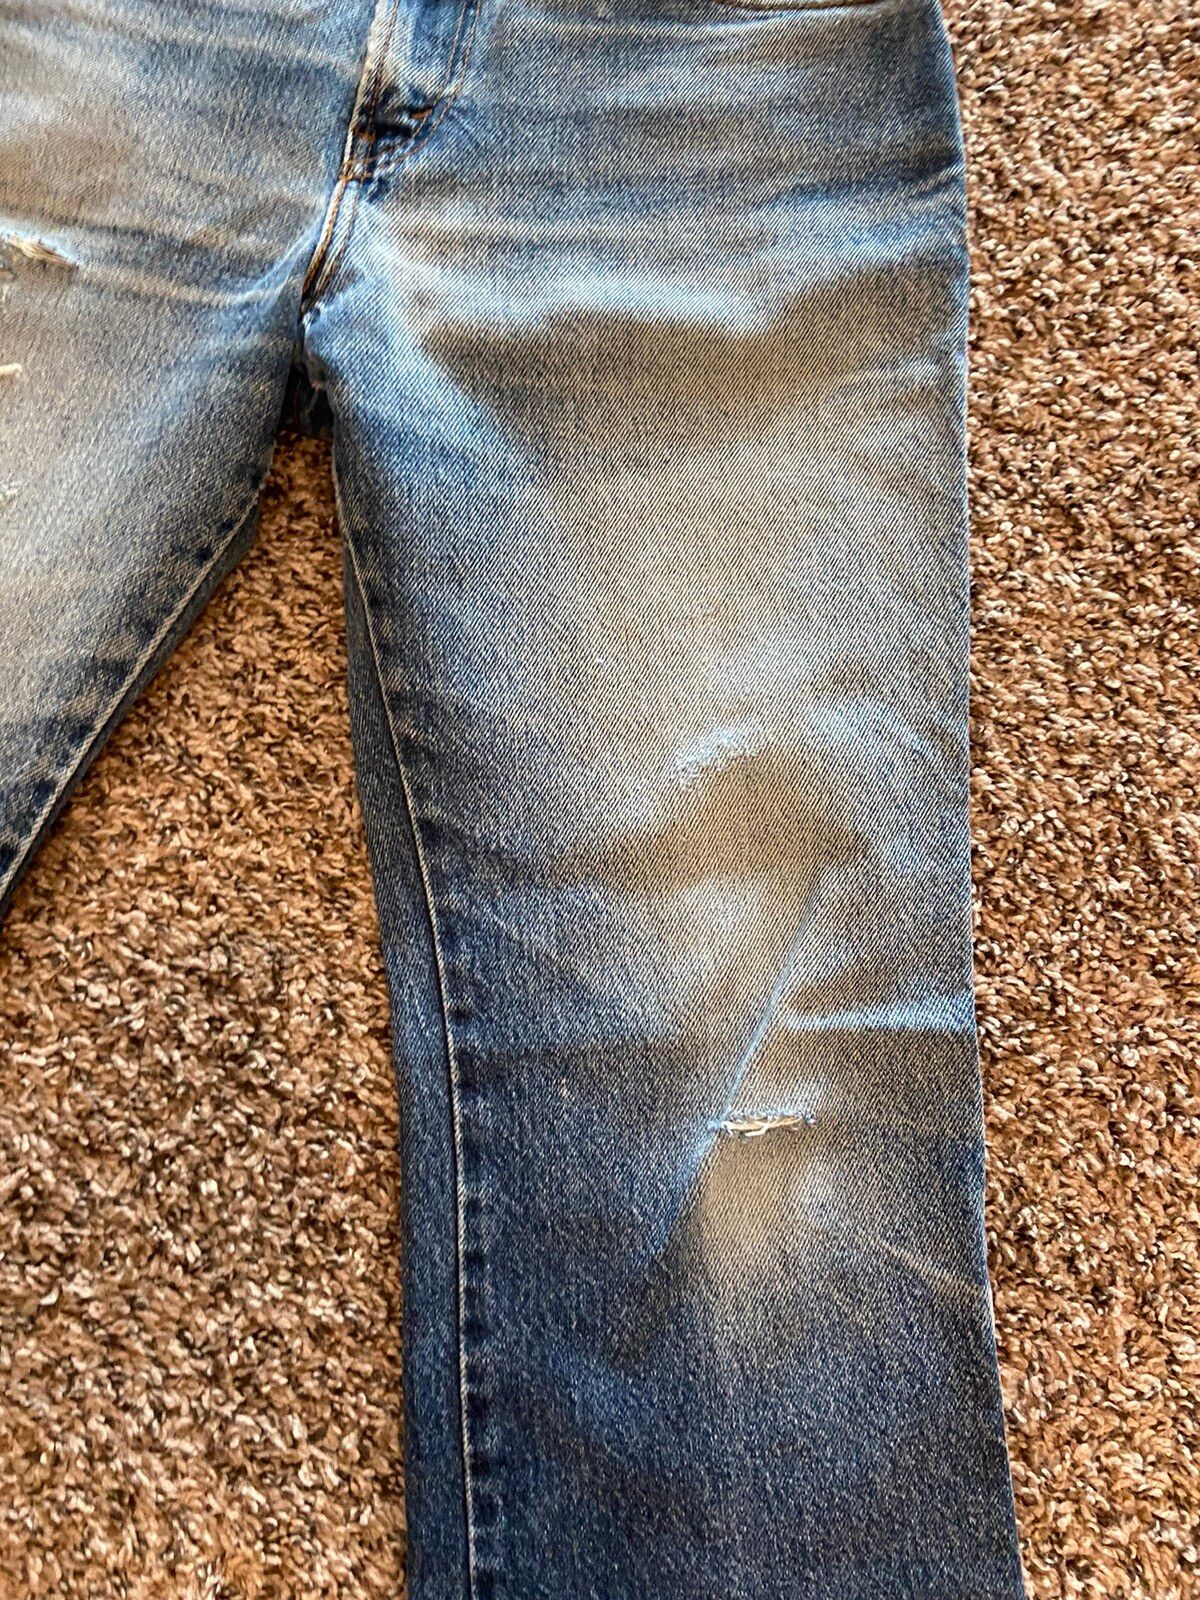 Vintage Vintage Levi’s 505 Distressed Denim Jeans Size US 30 / EU 46 - 4 Thumbnail